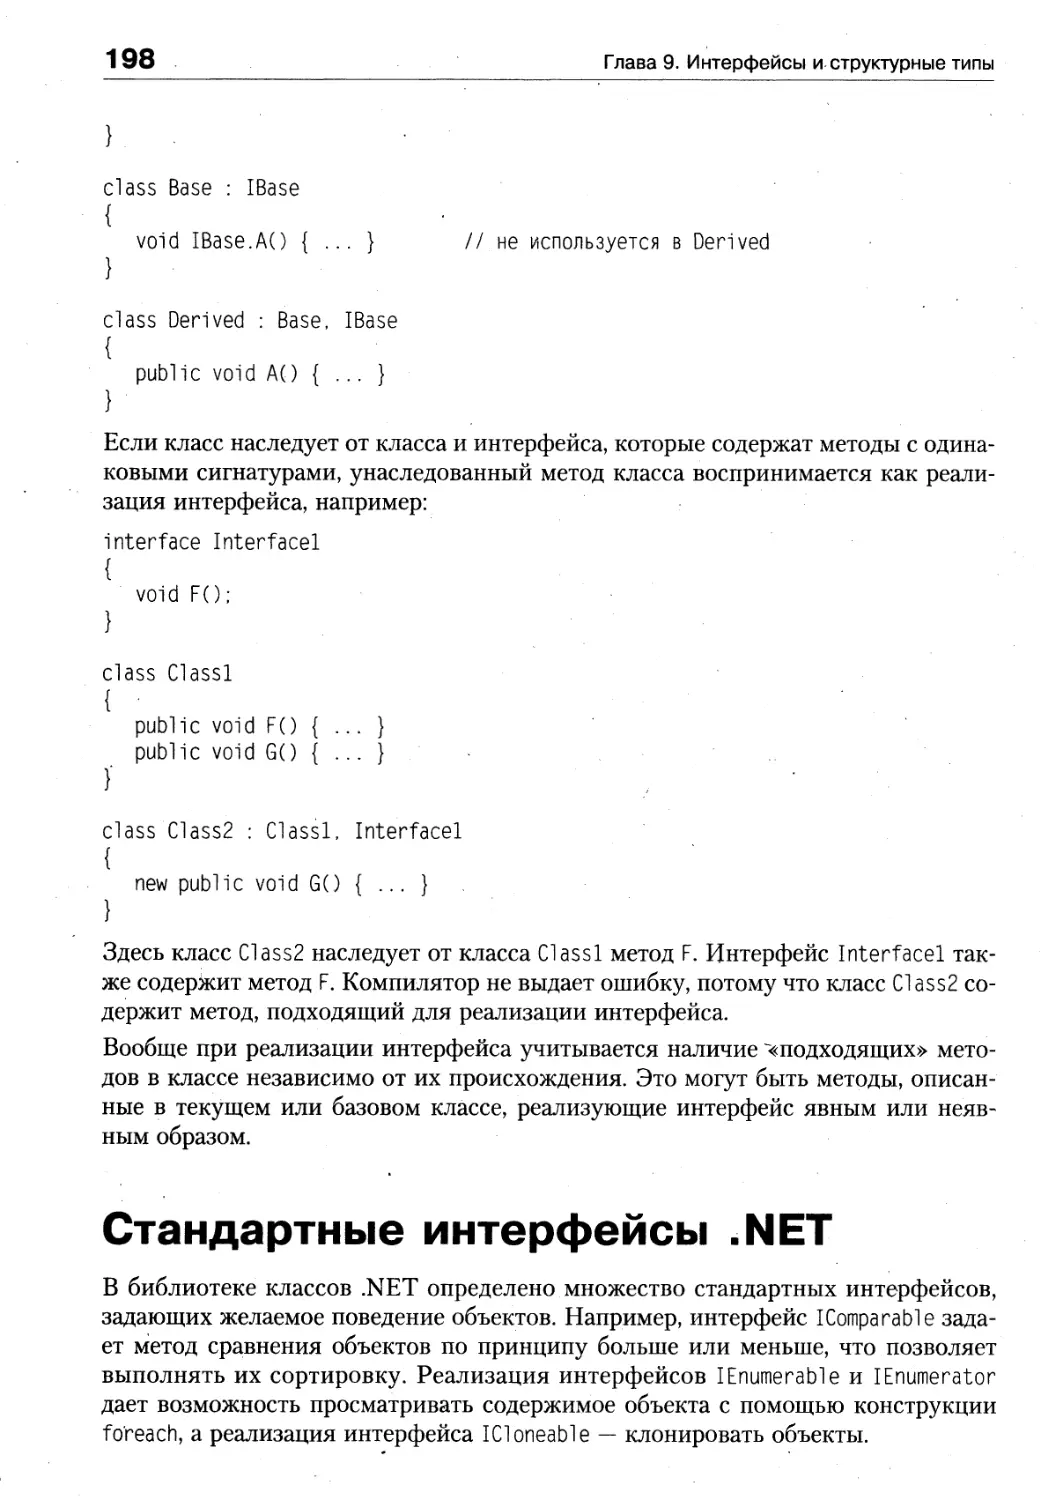 Стандартные интерфейсы .NET